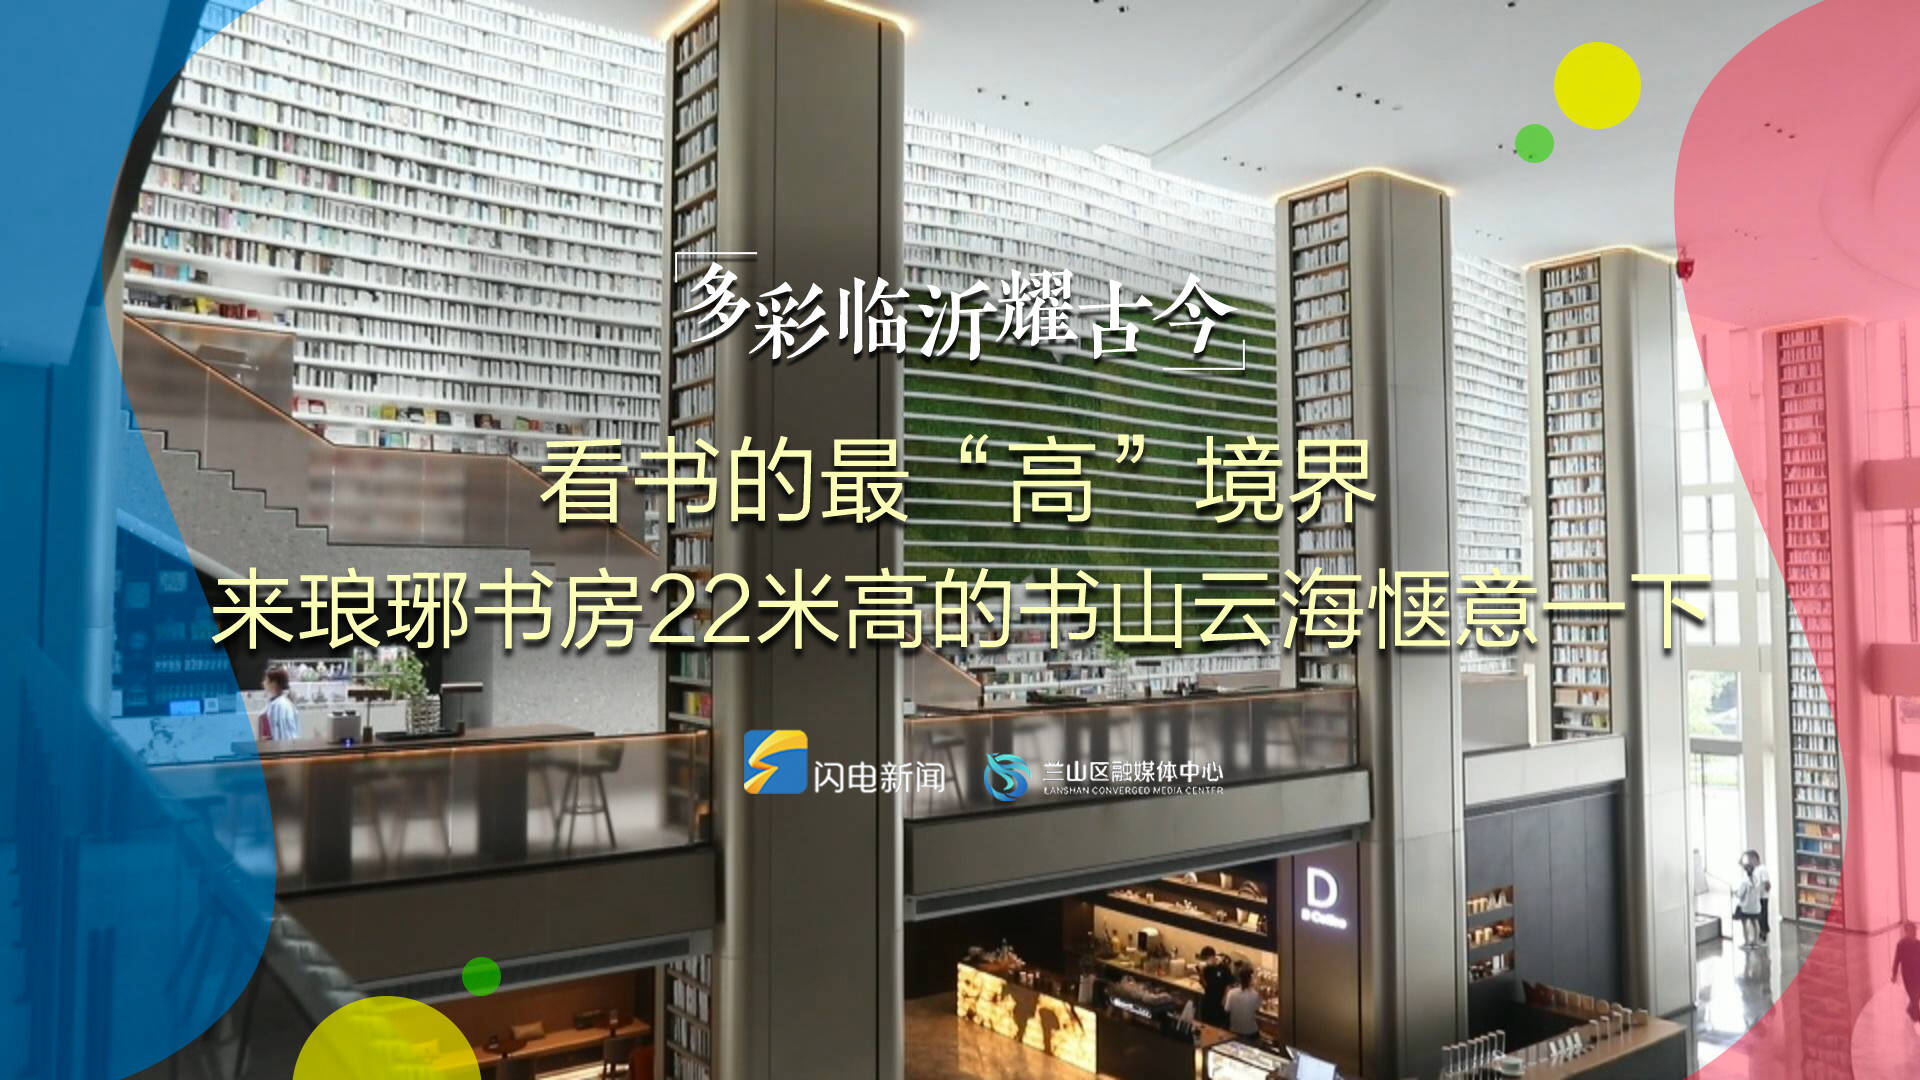 多彩临沂耀古今丨戳视频 感受22米高“书墙”的震撼